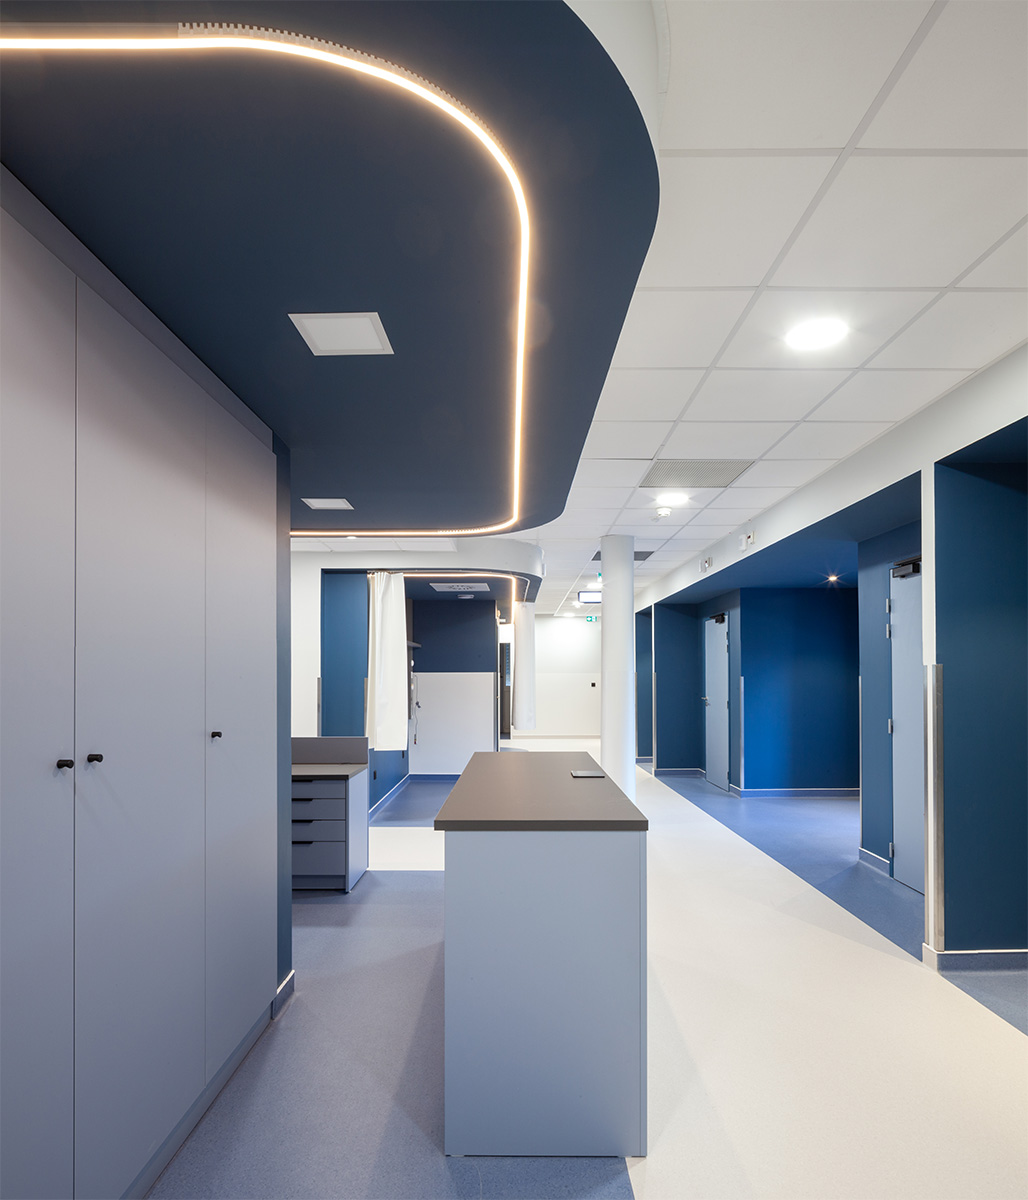 Photographie vue sur un croisement d'un couloir avec différents espaces délimitées par une couleur bleu au sol, table avec chemin lumineux au plafond